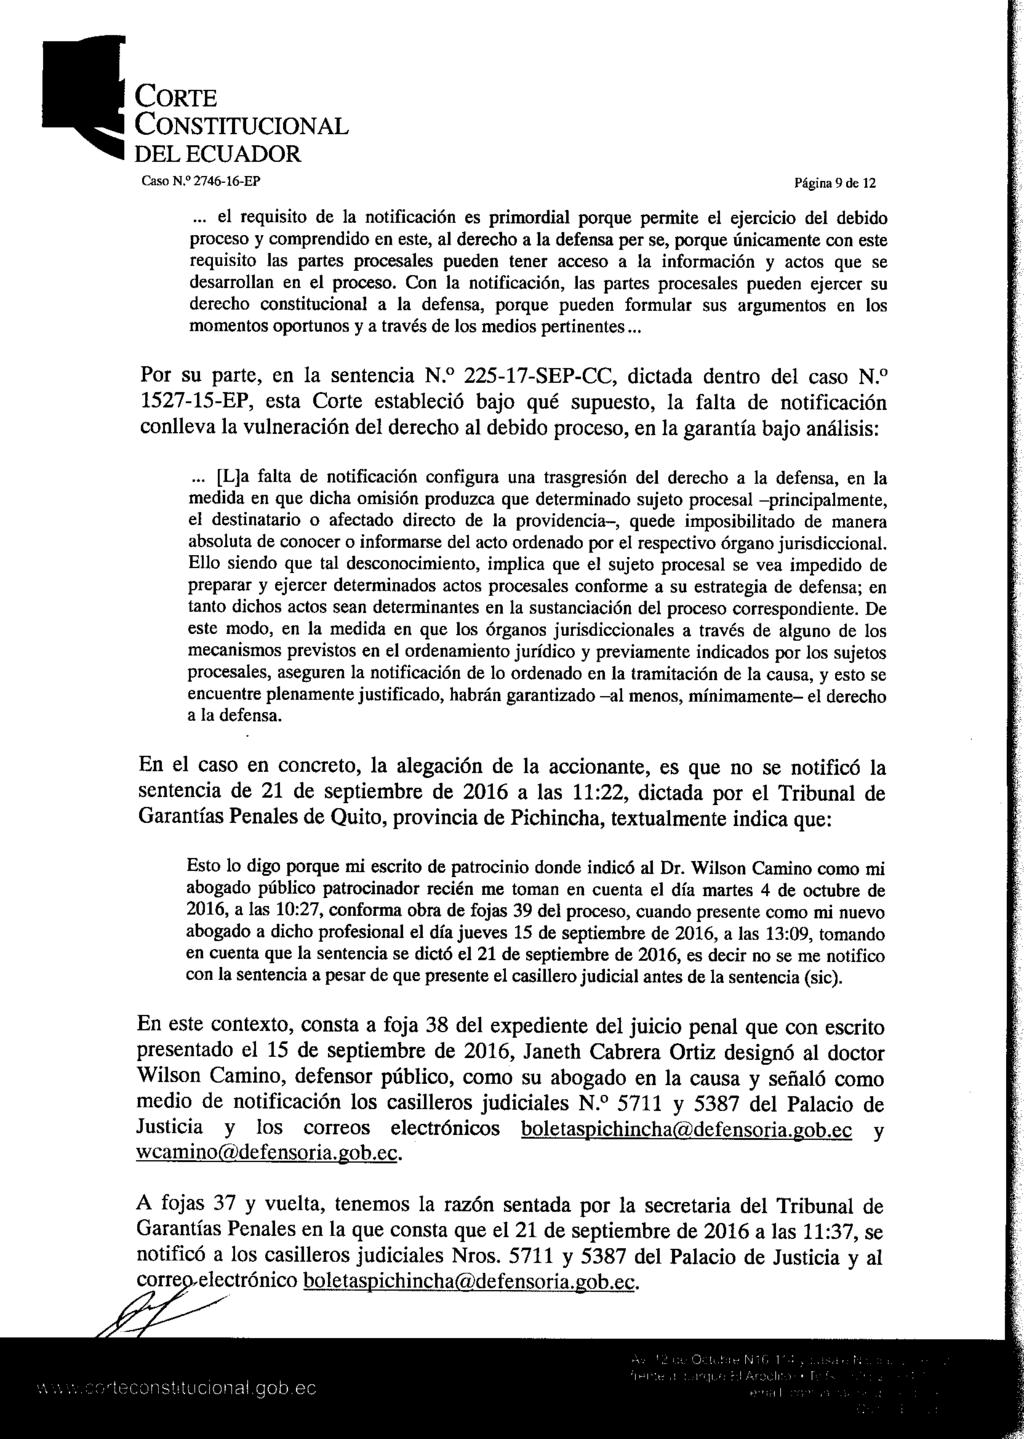 Constitucional Caso N. 2746-16-EP Página 9 de 12.